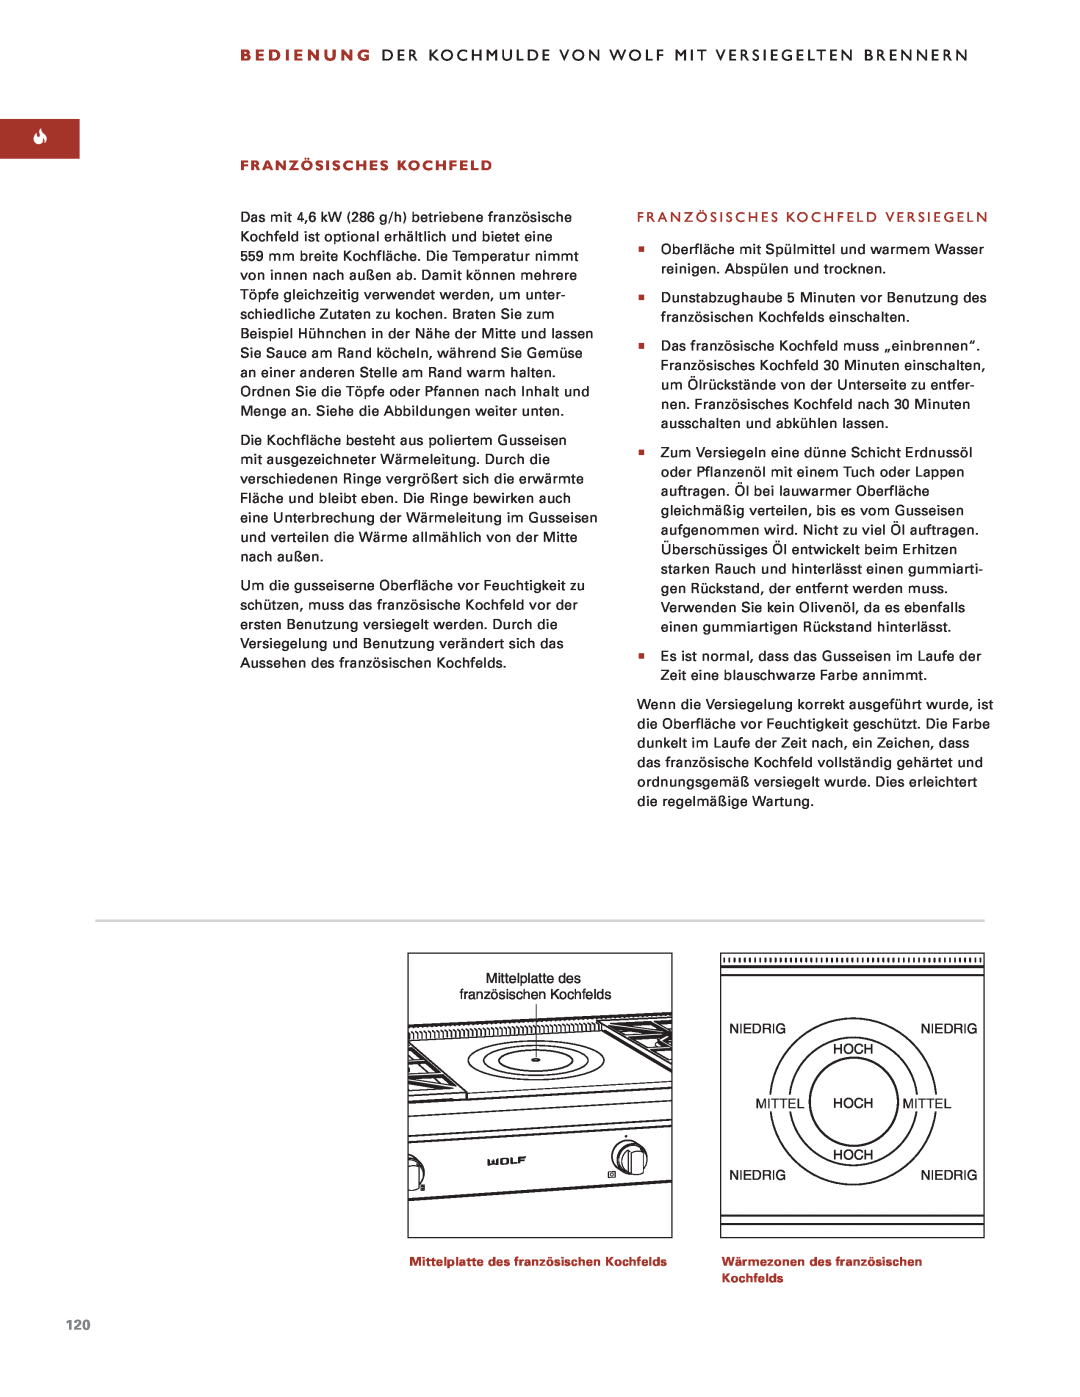 Sub-Zero Sealed Burner RangeTop manual Französisches Kochfeld Versiegeln, Mittelplatte des 